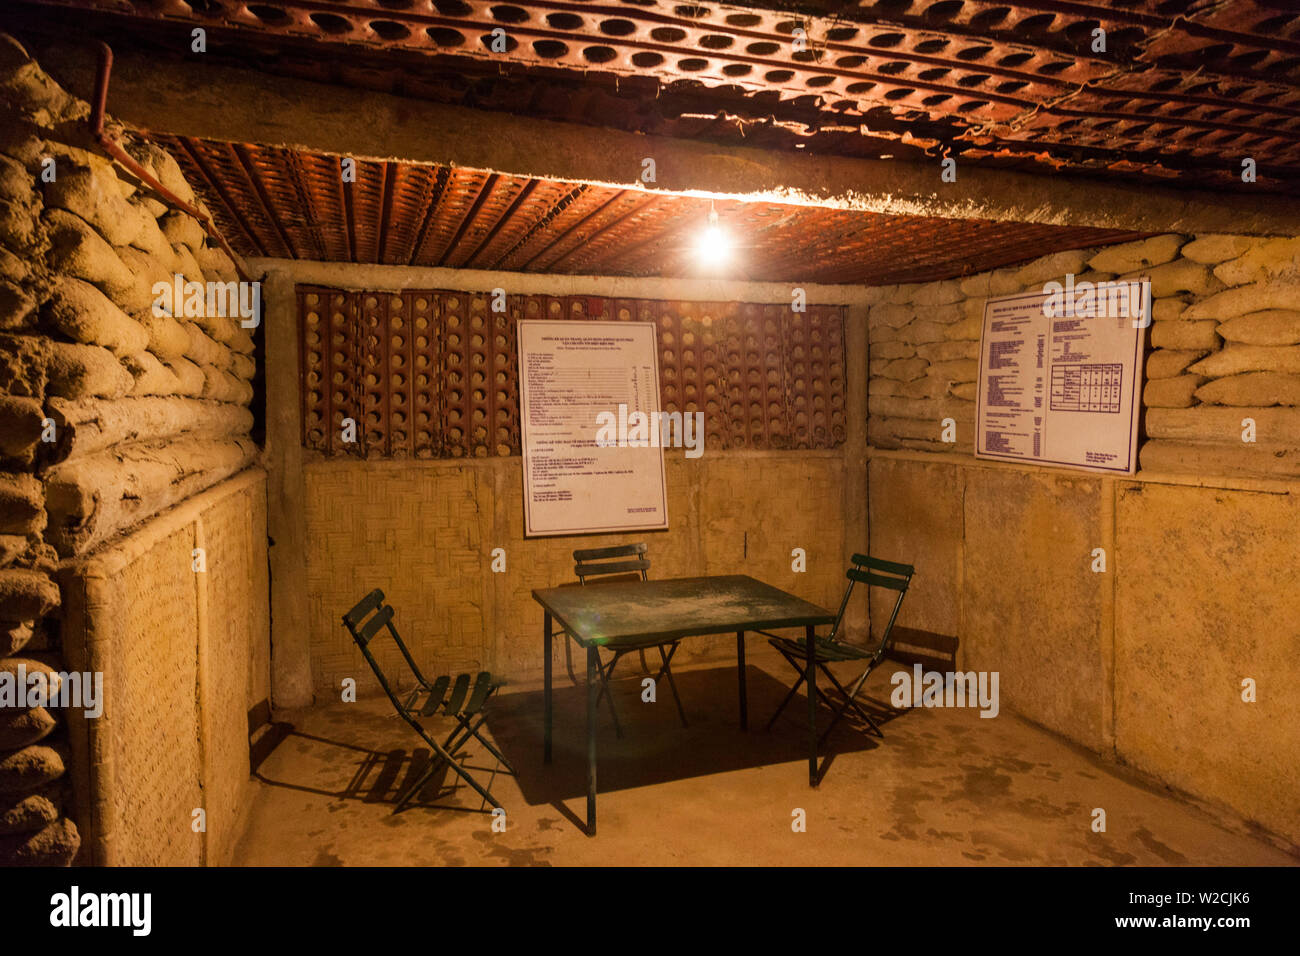 Vietnam, Dien Bien Phu, ehemaliger Sitz des französischen Kommandanten, unterirdischen Bunker Bunker Oberst Castries Stockfoto